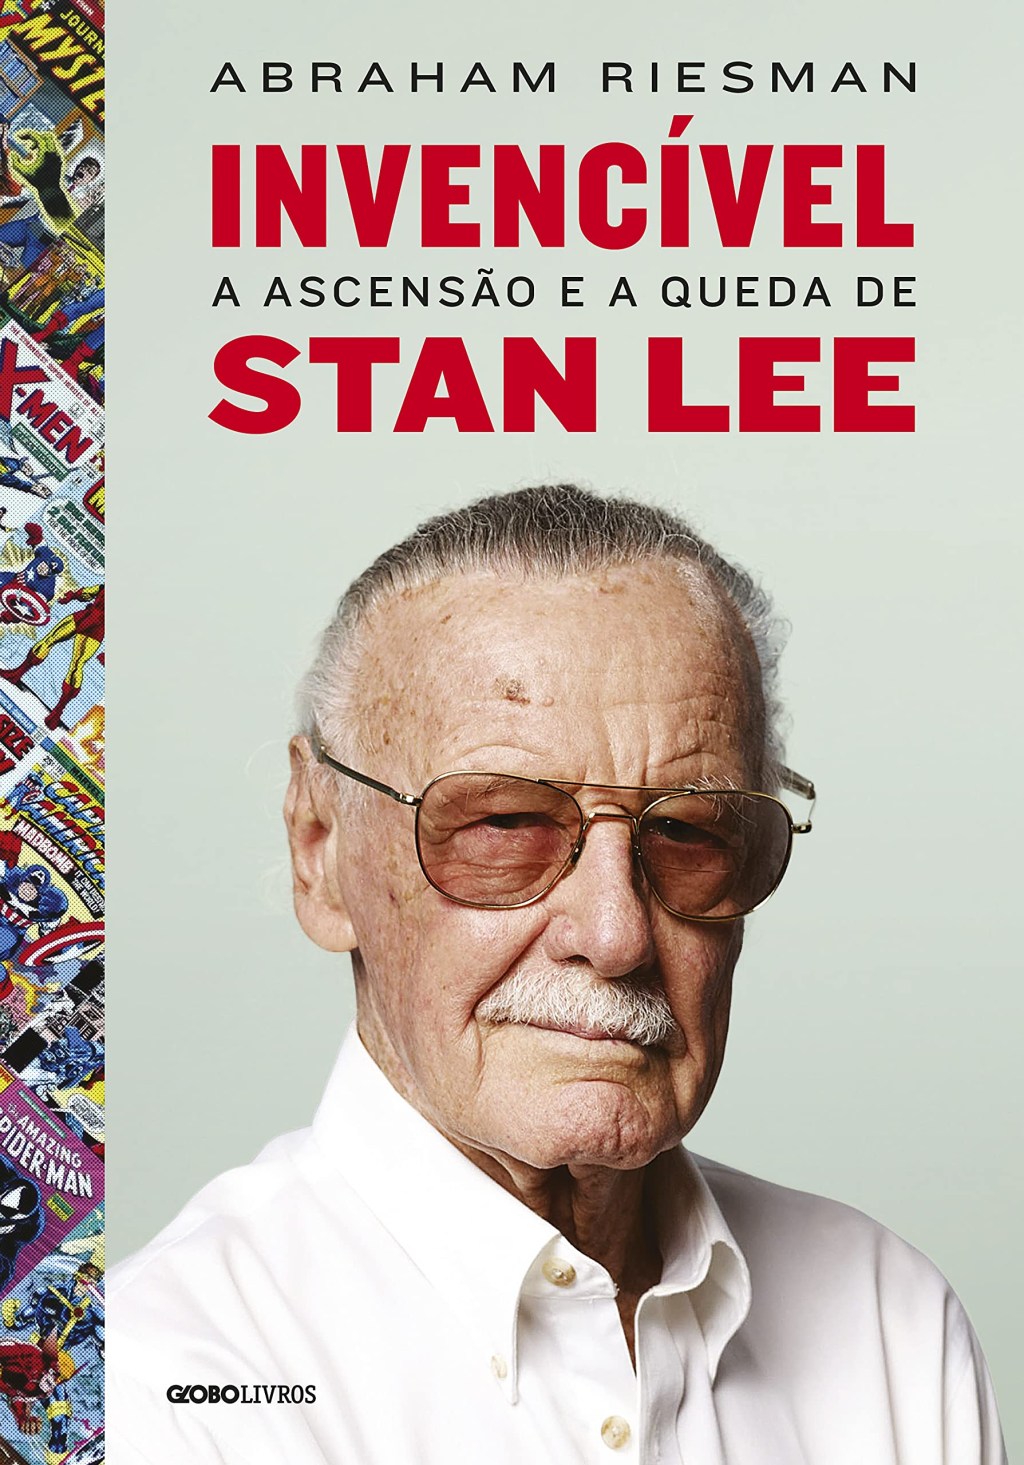 Capa do livro "Invencível: A ascensão e a queda de Stan Lee".